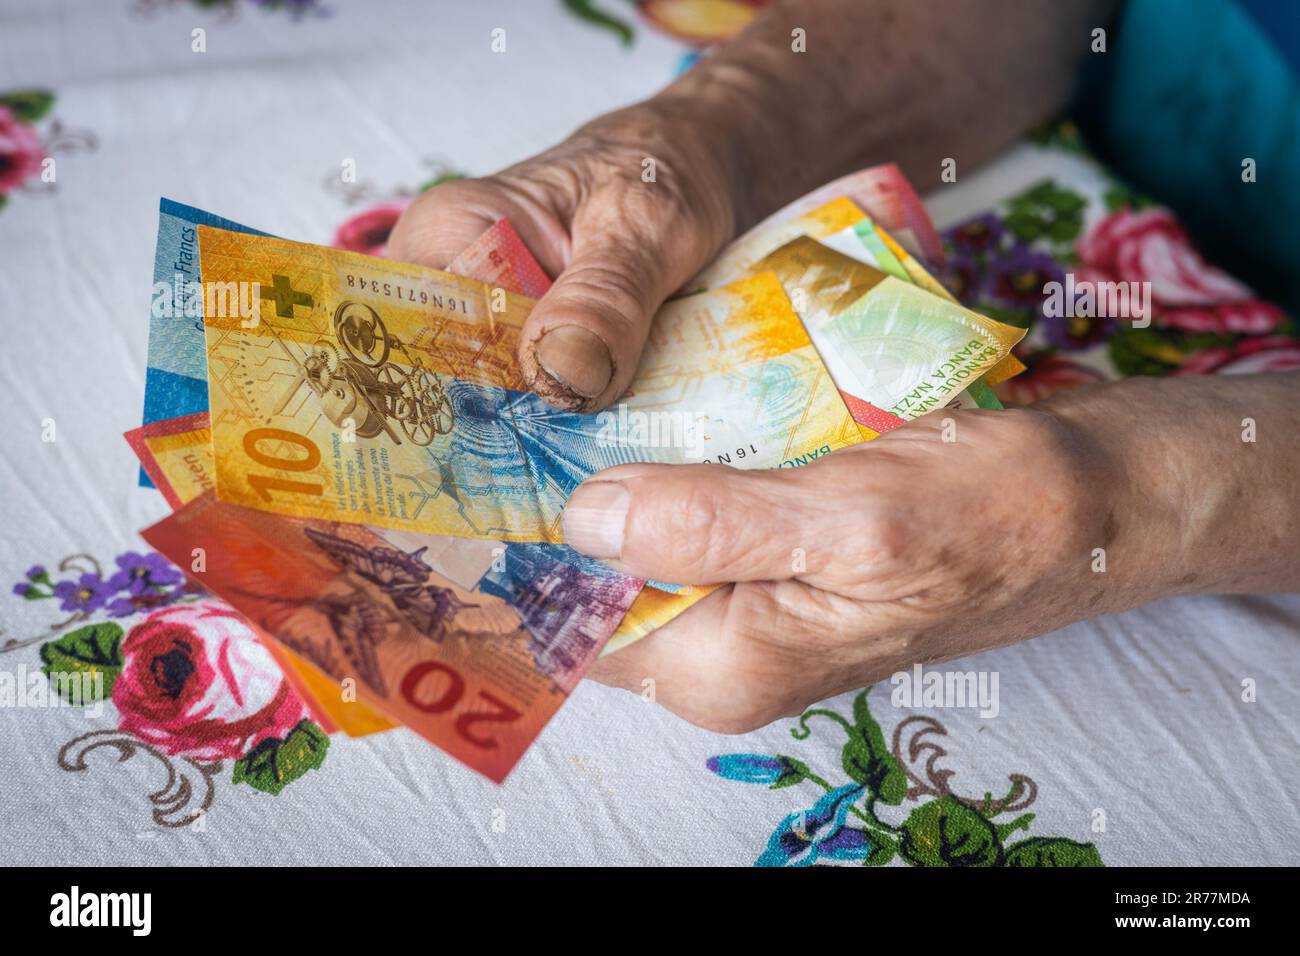 Die Rentnerin hält eine Banknote mit niedrigem Nennwert in ihren Händen, die Lebenshaltungskosten für einen älteren Bürger in der Schweiz, die Renten und die Schweizer Sozialversicherung Stockfoto